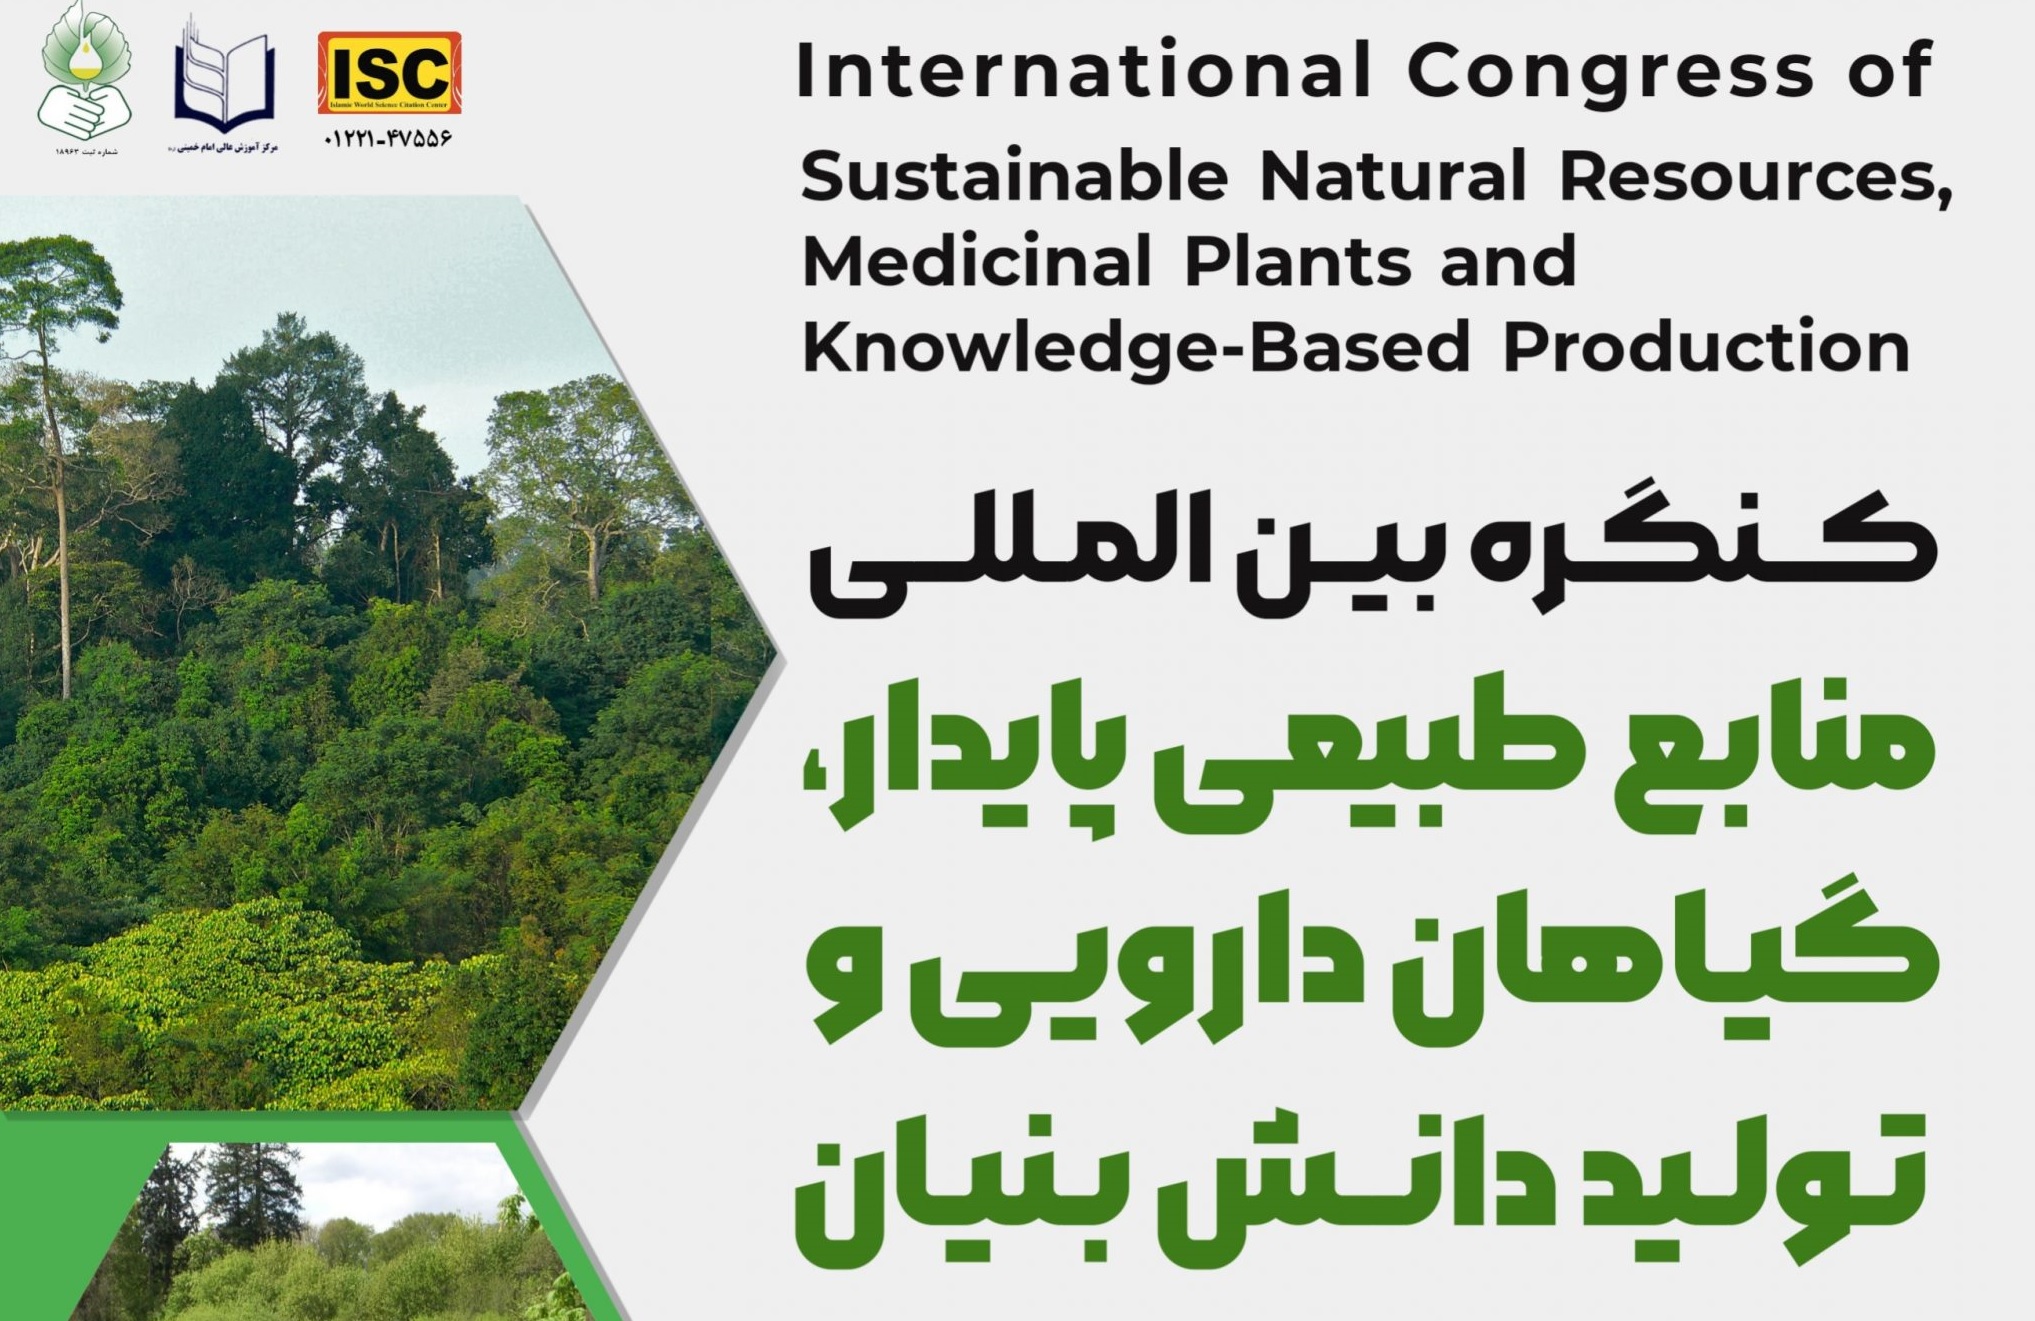 کنگره بین المللی منابع طبیعی پایدار، گیاهان دارویی و تولید دانش بنیان